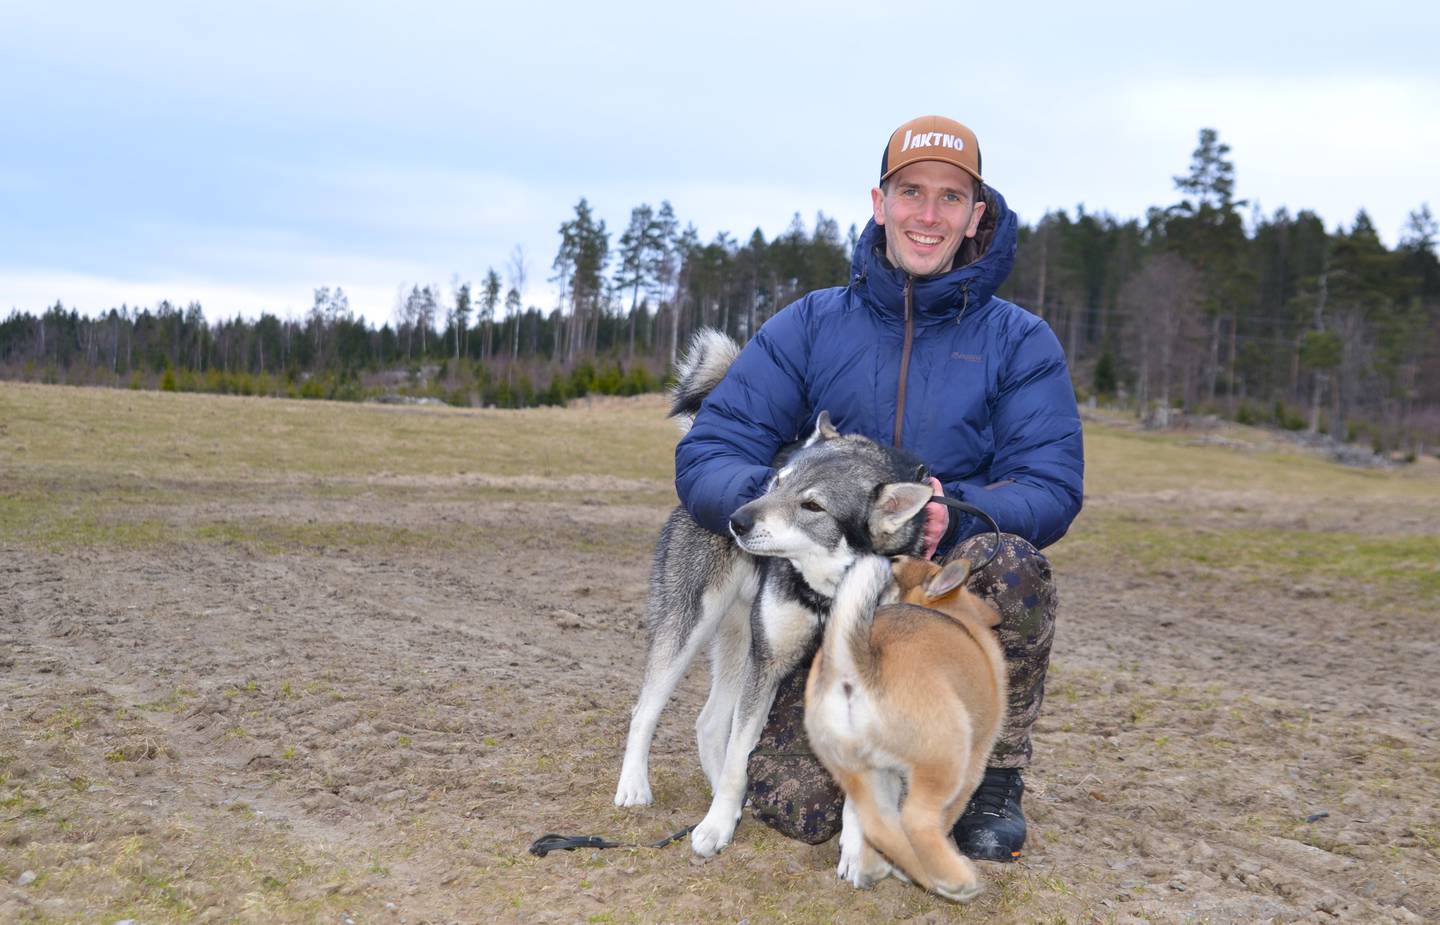 Jonas Breda bruker sin to år gamle  jämthund på villsvinjakt - en gang i fremtiden skal den ti uker gamle valpen også bidra.